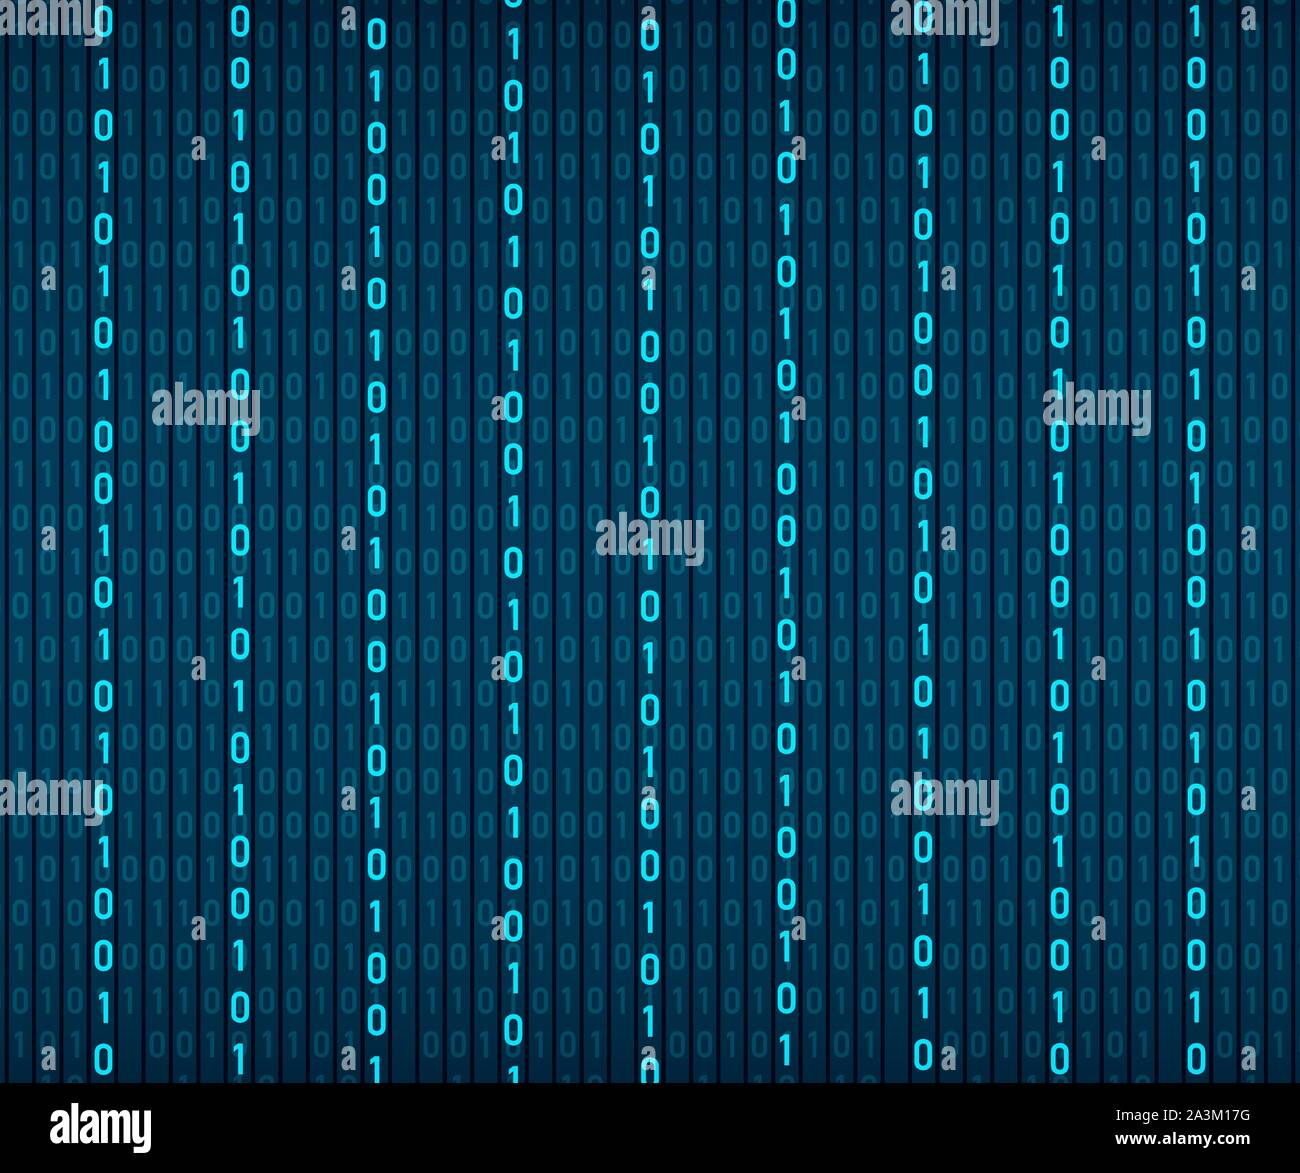 Hintergrund in einer Matrix Stil. Der zufallszahlen. Blau ist dominierende Farbe. Vector Illustration. Stock Vektor